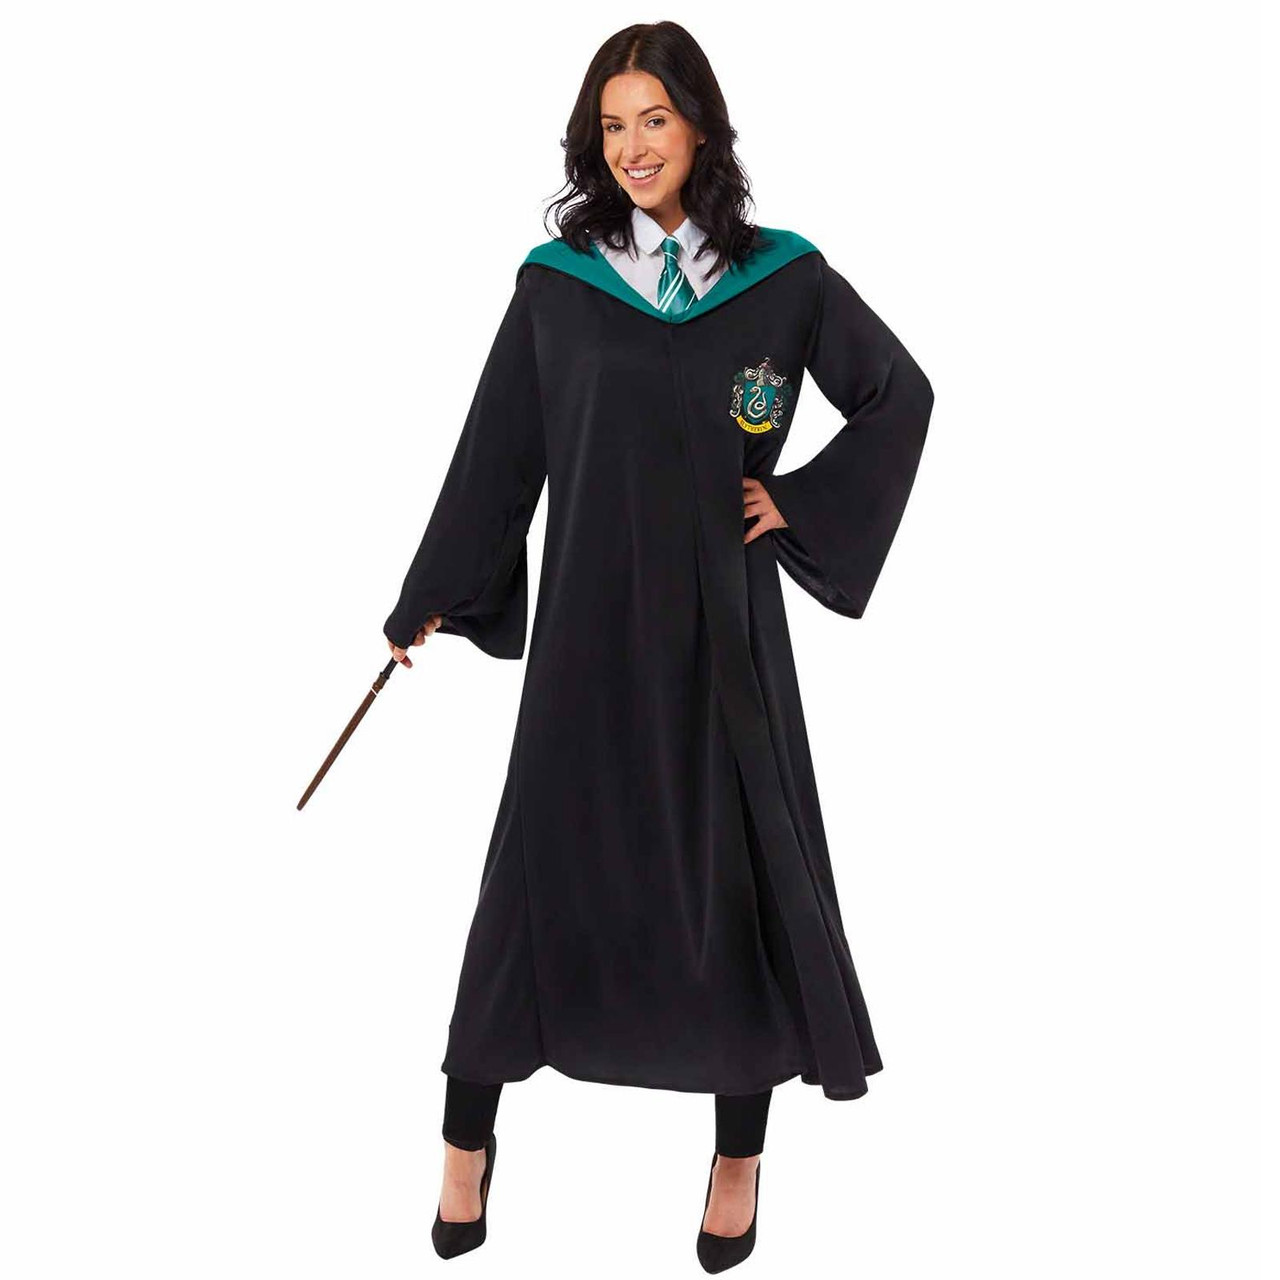 Slytherin Robe Fancy Dress Wizard Costume Harry Potter Men's Womens Adults  BNWT